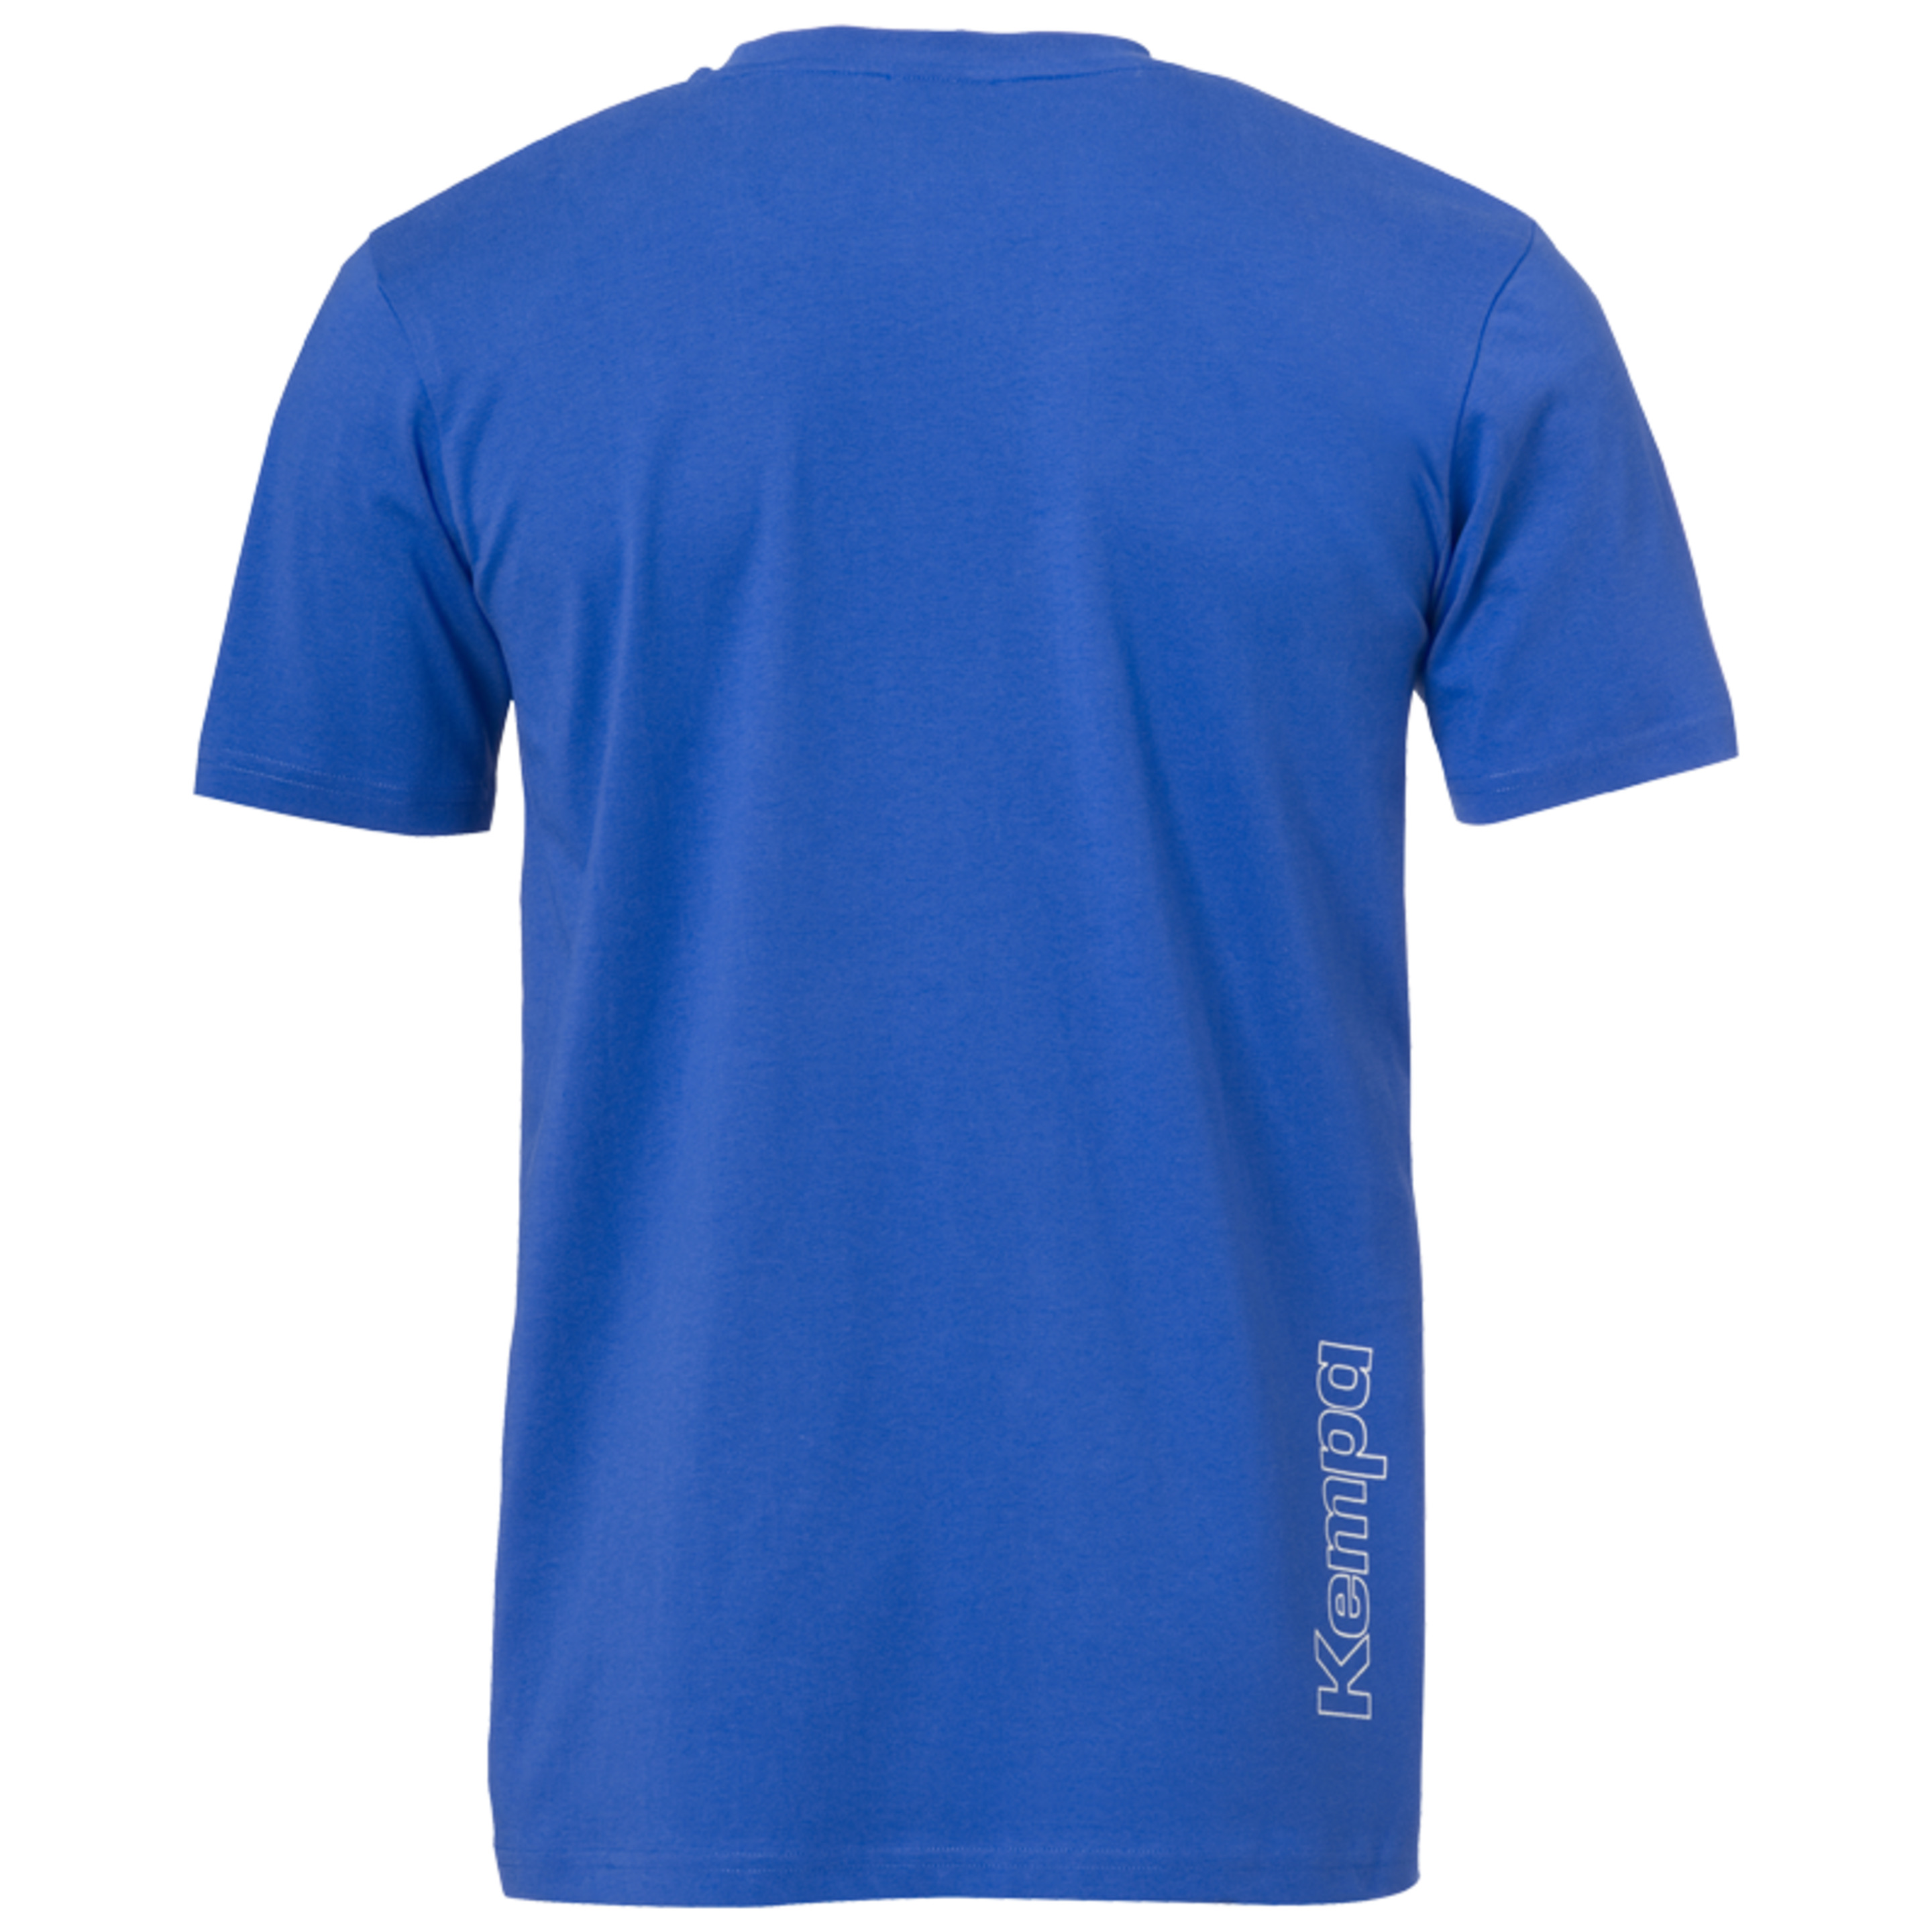 Core 2.0 T-shirt Azul Royal Kempa - azul - Core 2.0 T-shirt Azul Royal Kempa  MKP